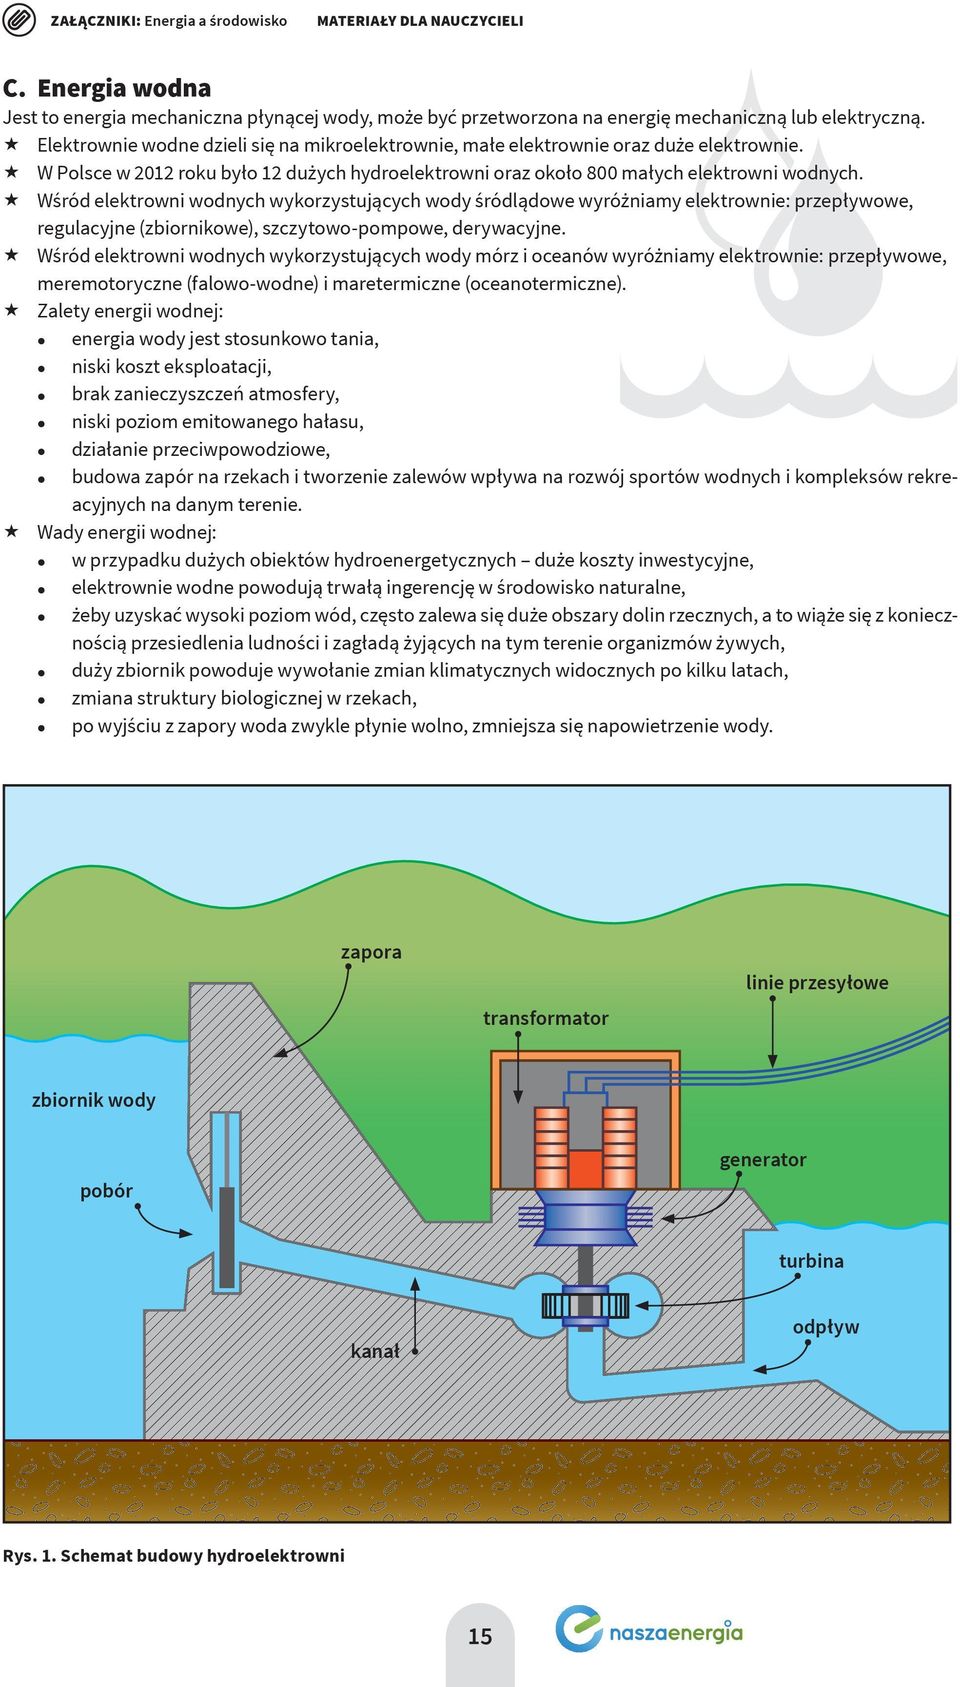 Wśród elektrowni wodnych wykorzystujących wody śródlądowe wyróżniamy elektrownie: przepływowe, regulacyjne (zbiornikowe), szczytowo-pompowe, derywacyjne.